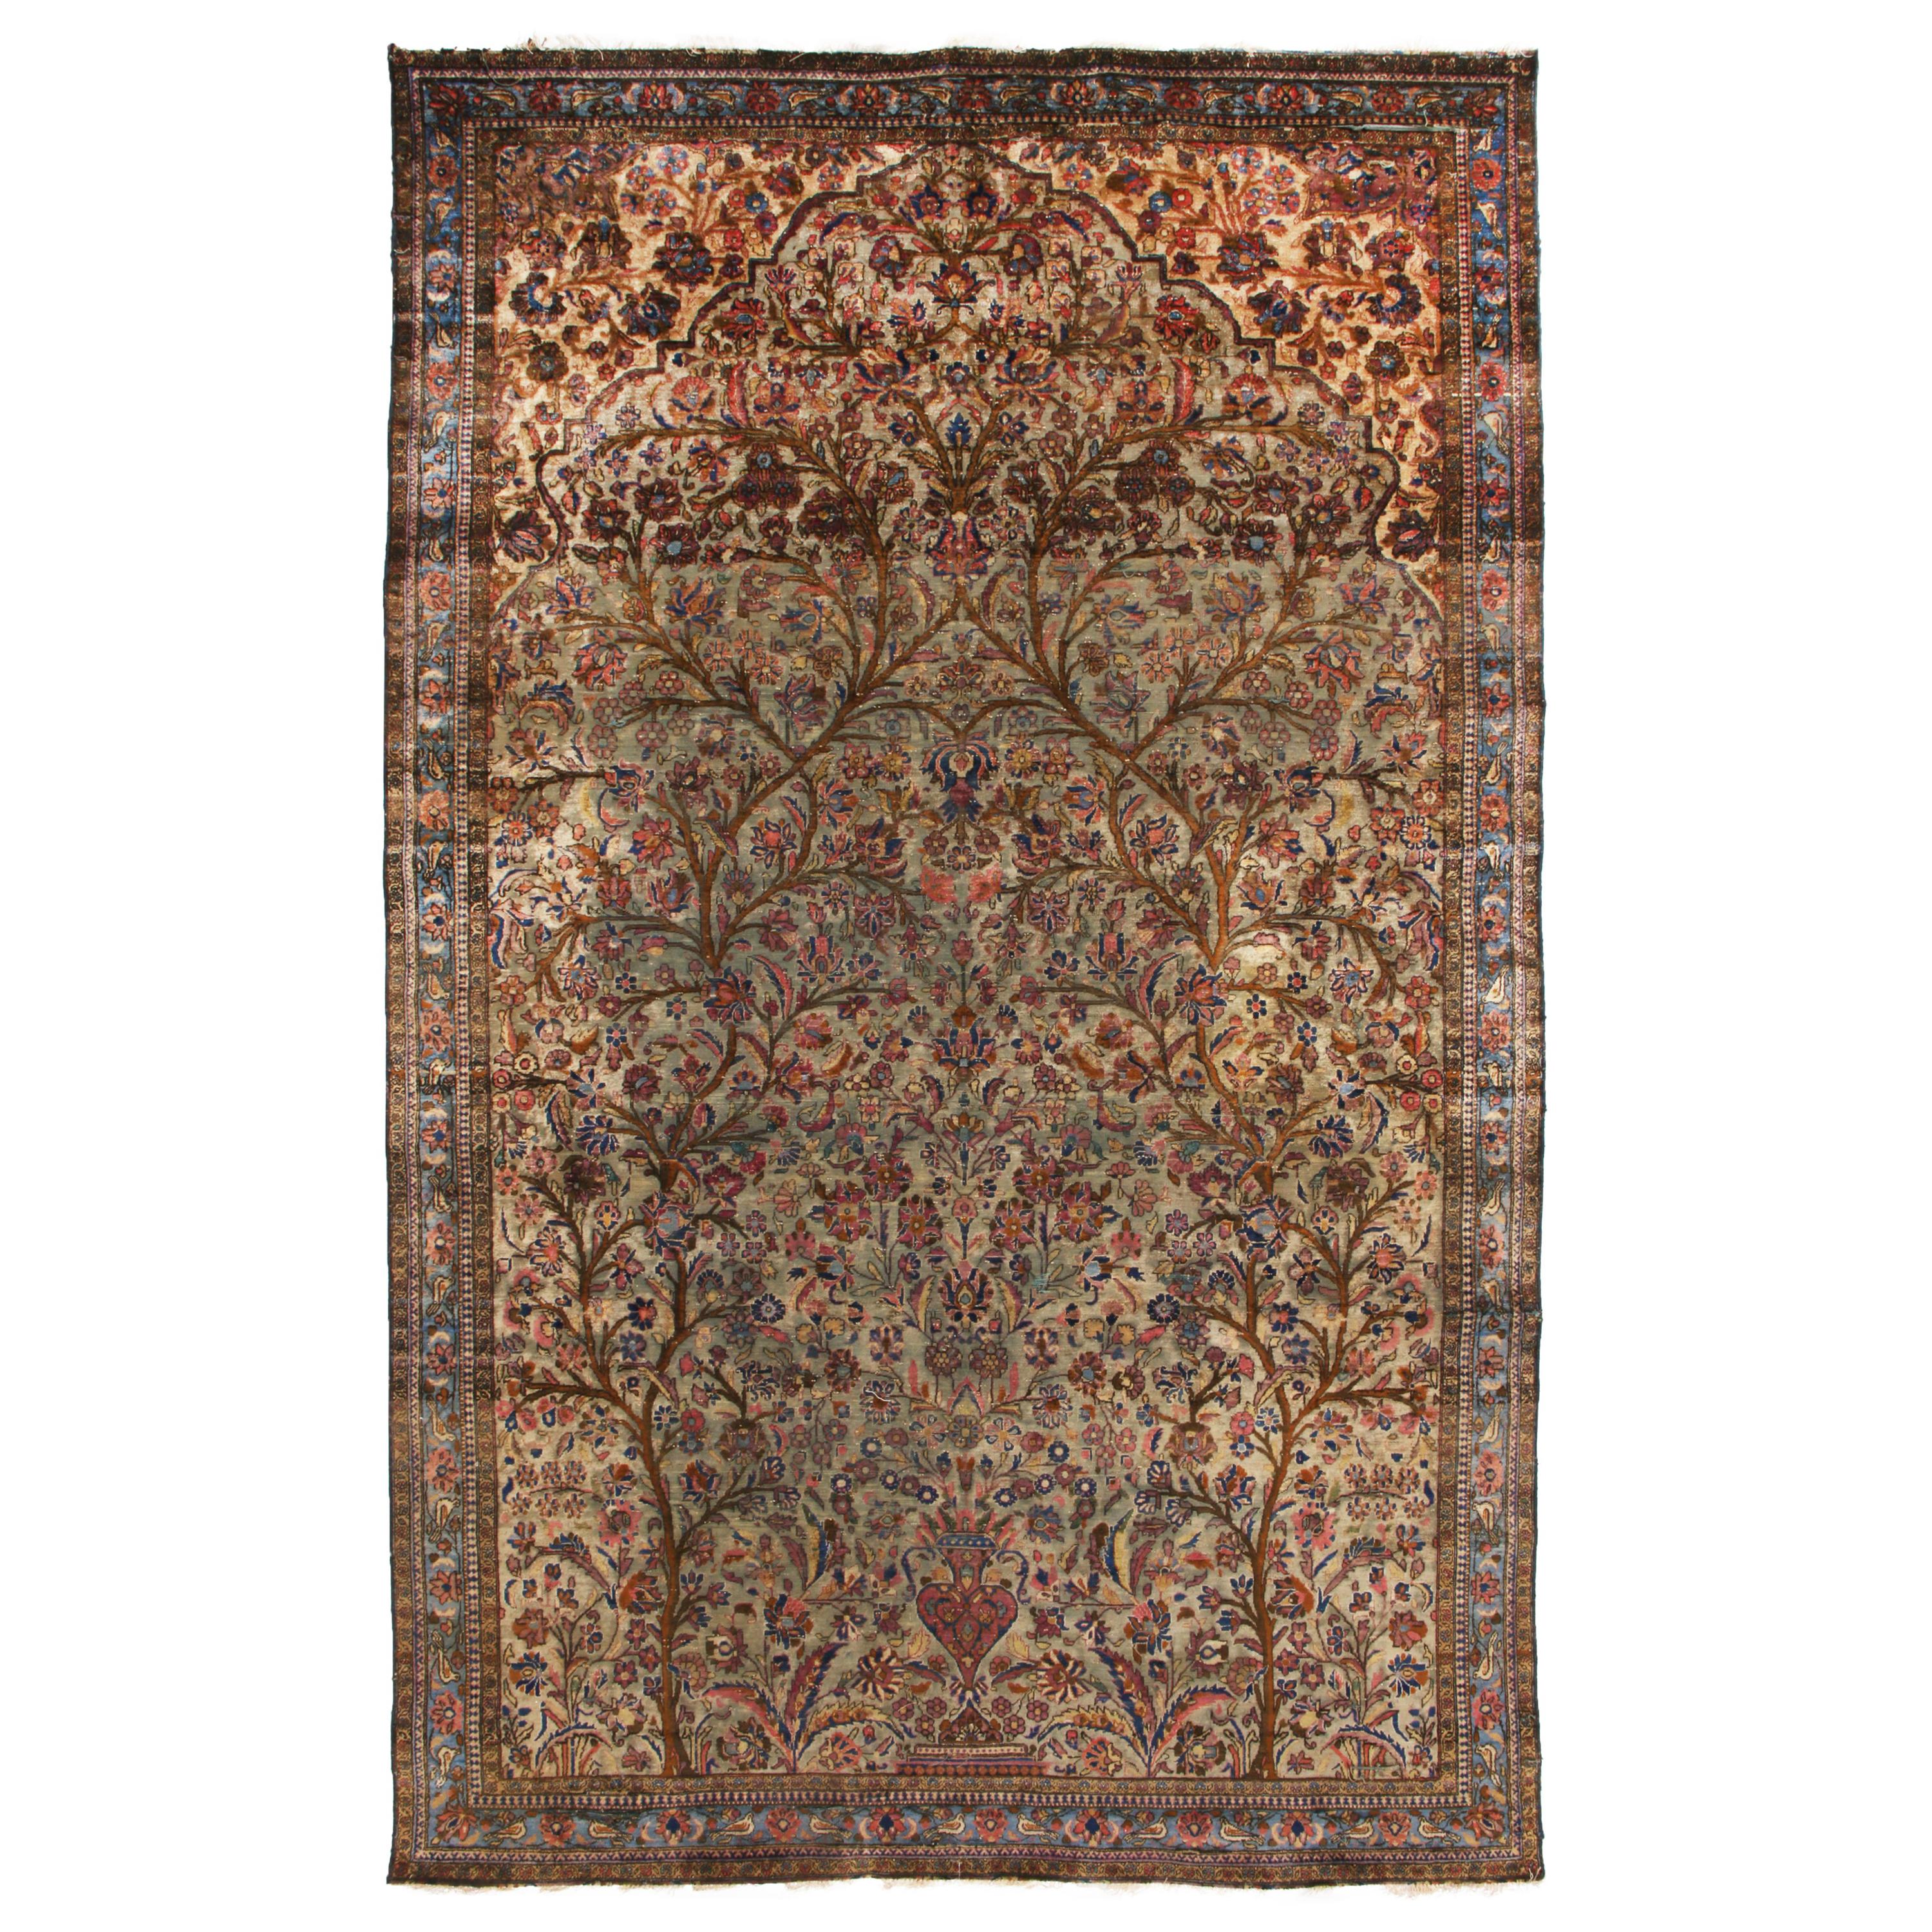 Handgeknüpfter antiker persischer Teppich in Beige-Braun mit Blumenmuster von Teppich & Kelim